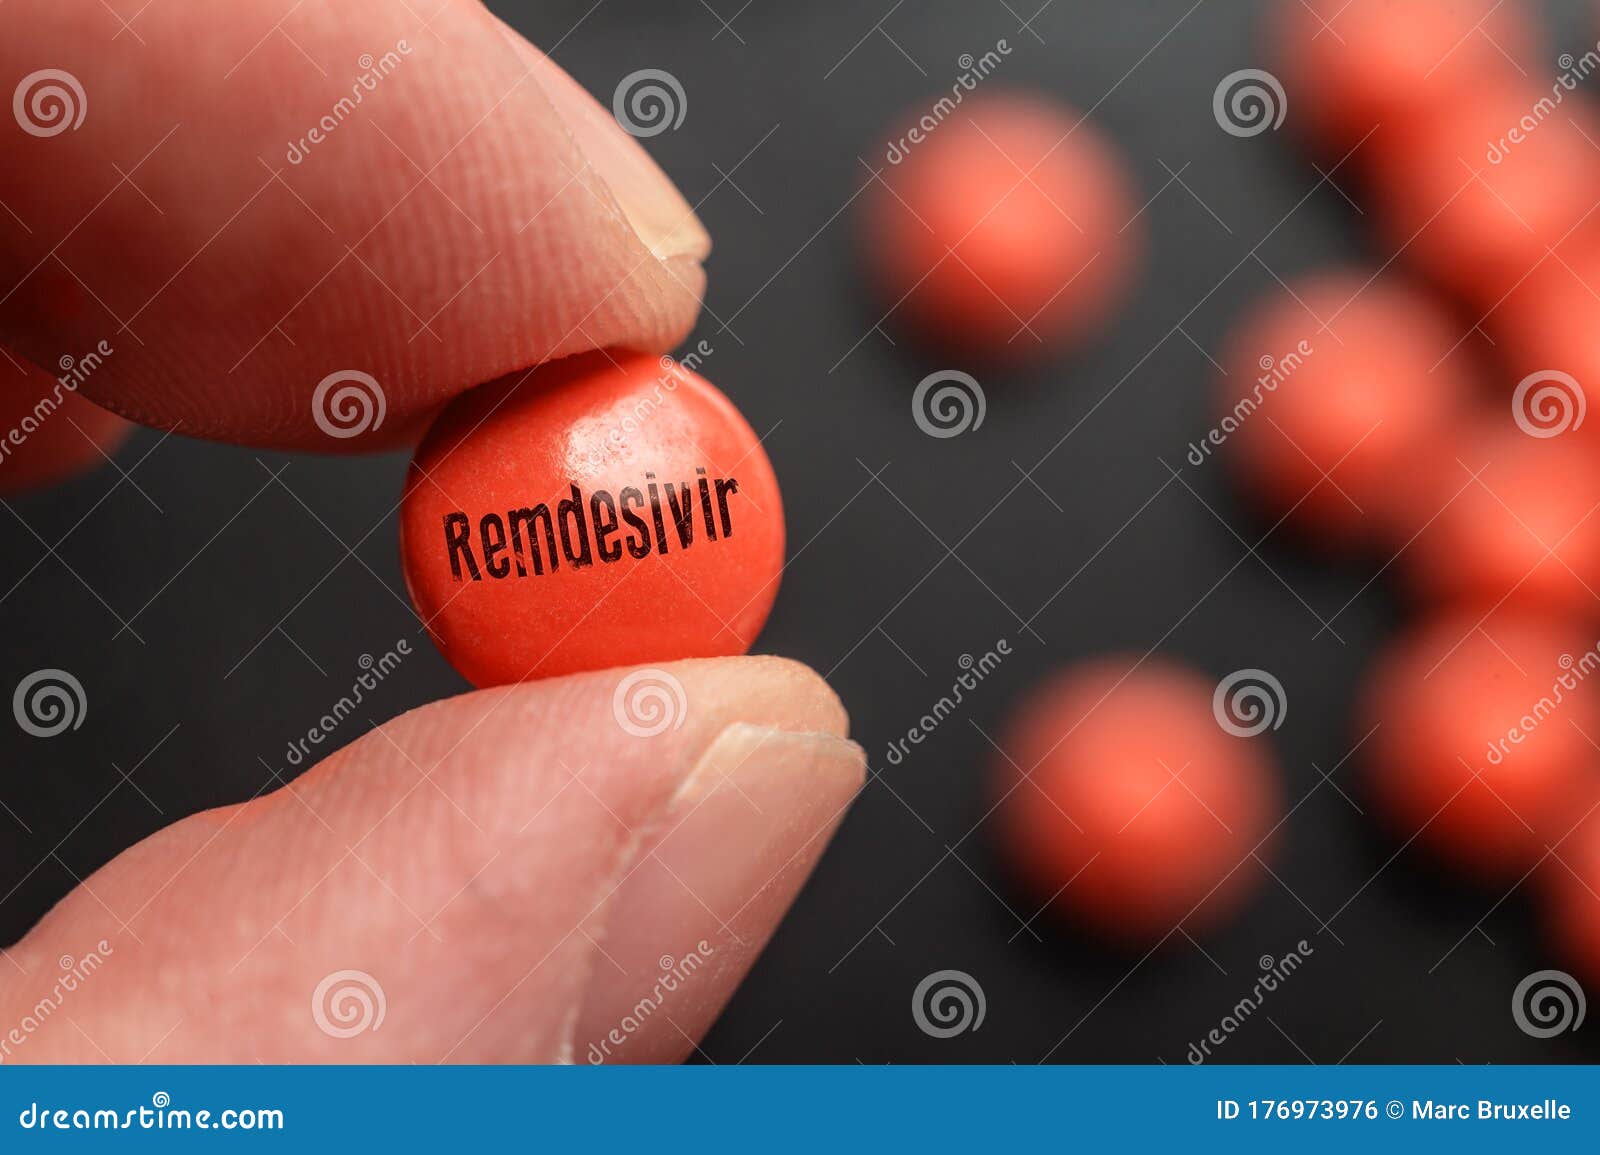 artistic rendering of a remdesivir pill